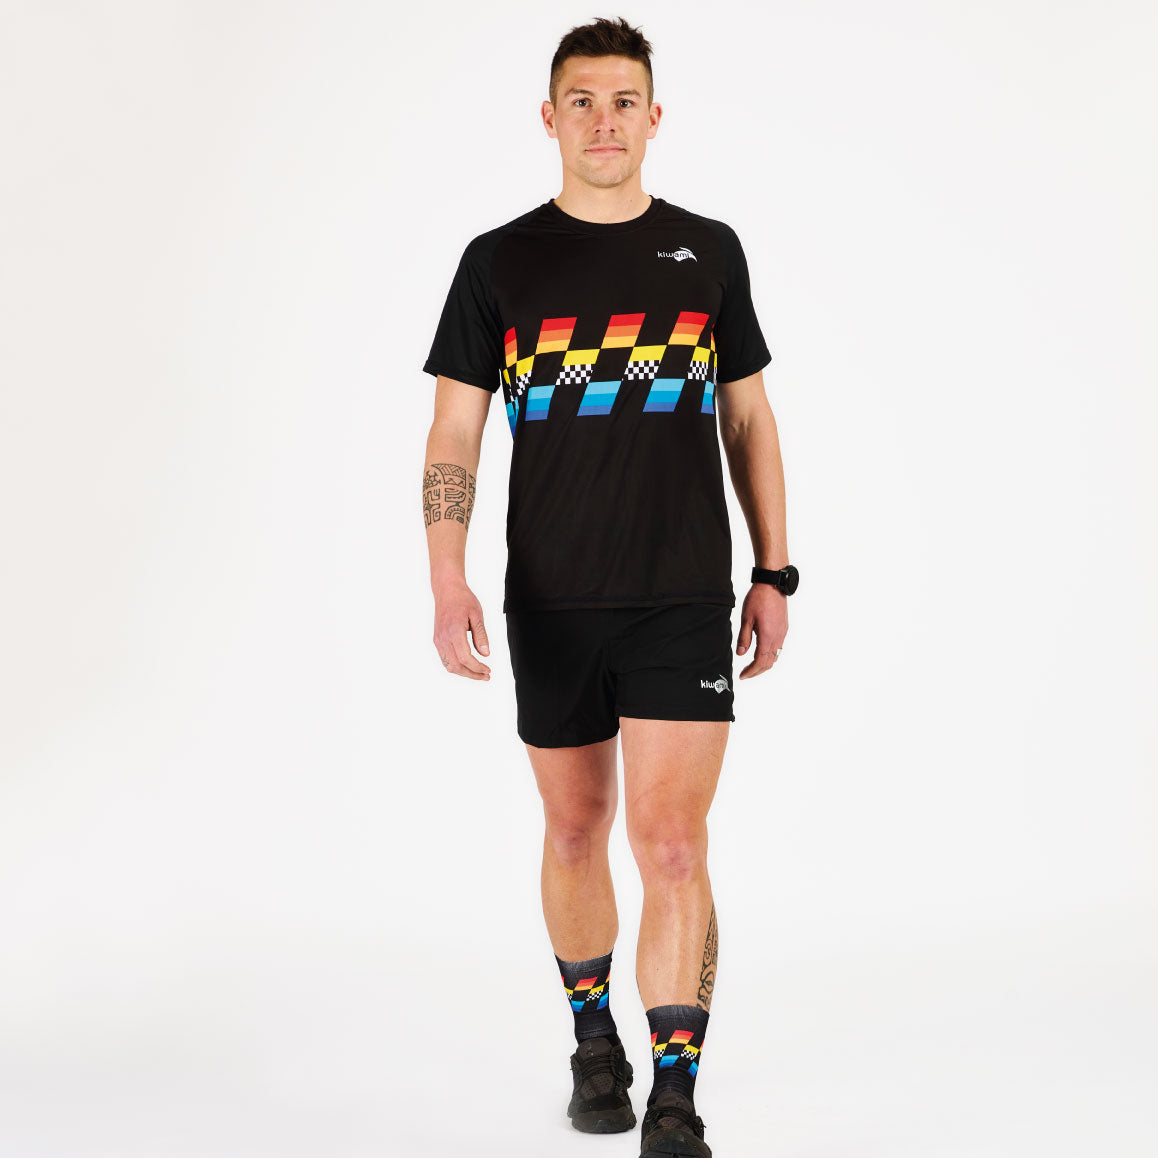 Tee-shirts manches courtes Running Homme développés pour la performance pure et le confort absolu. Course à pied, triathlon- tee-shirts fabriqués en France par Kiwami Sports